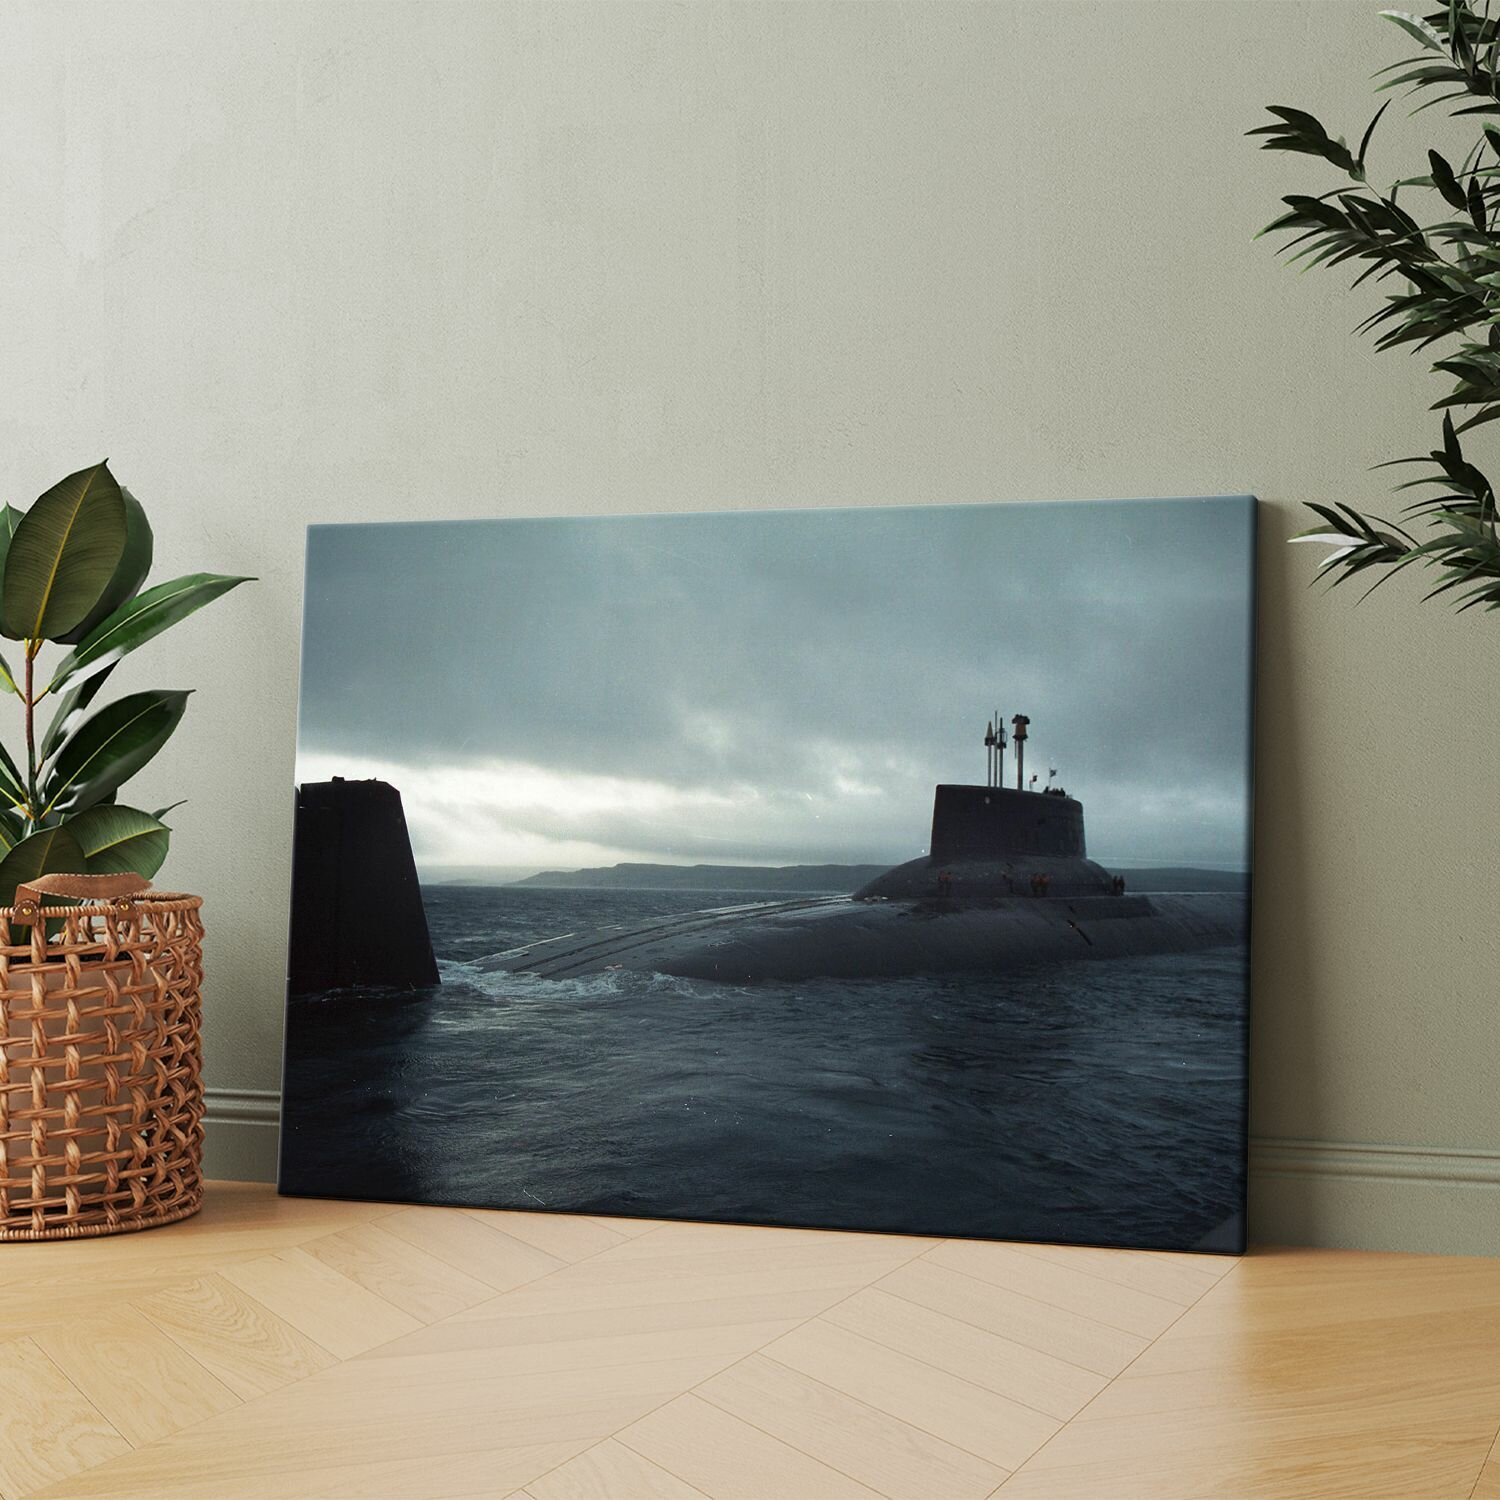 Картина на холсте (Подводная лодка в воде) 40x60 см. Интерьерная, на стену.